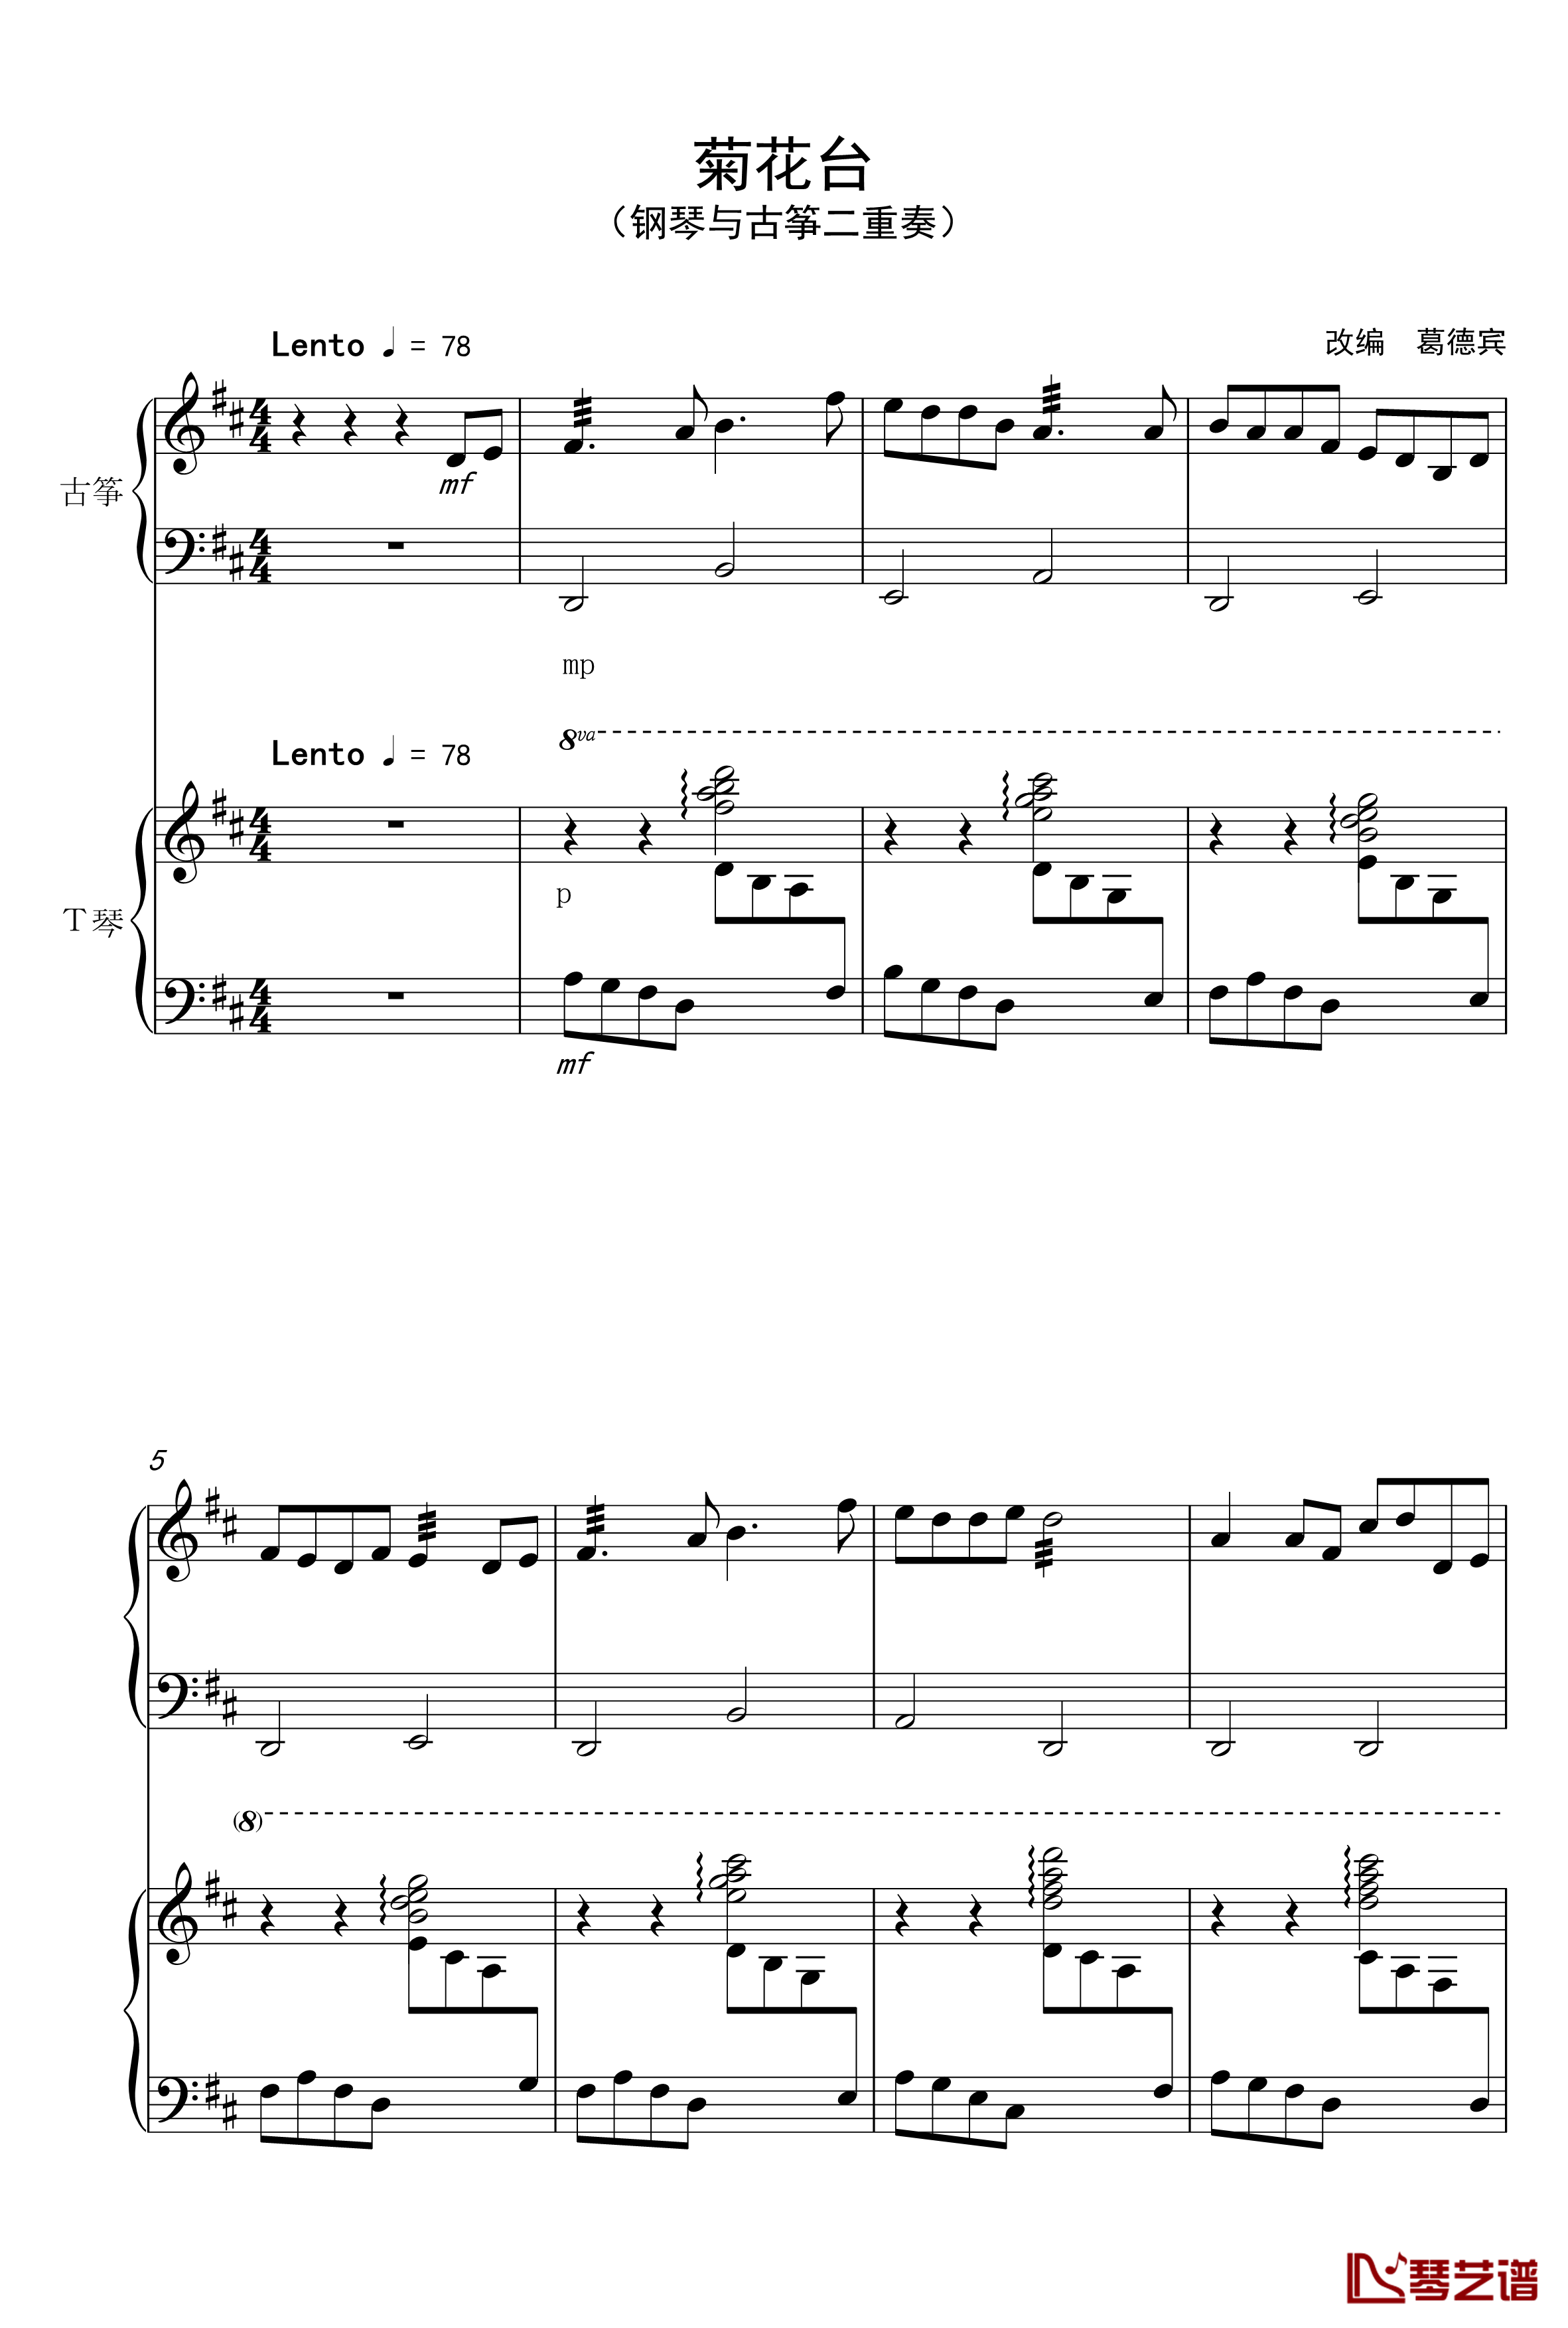 菊花台钢琴谱-周杰伦1